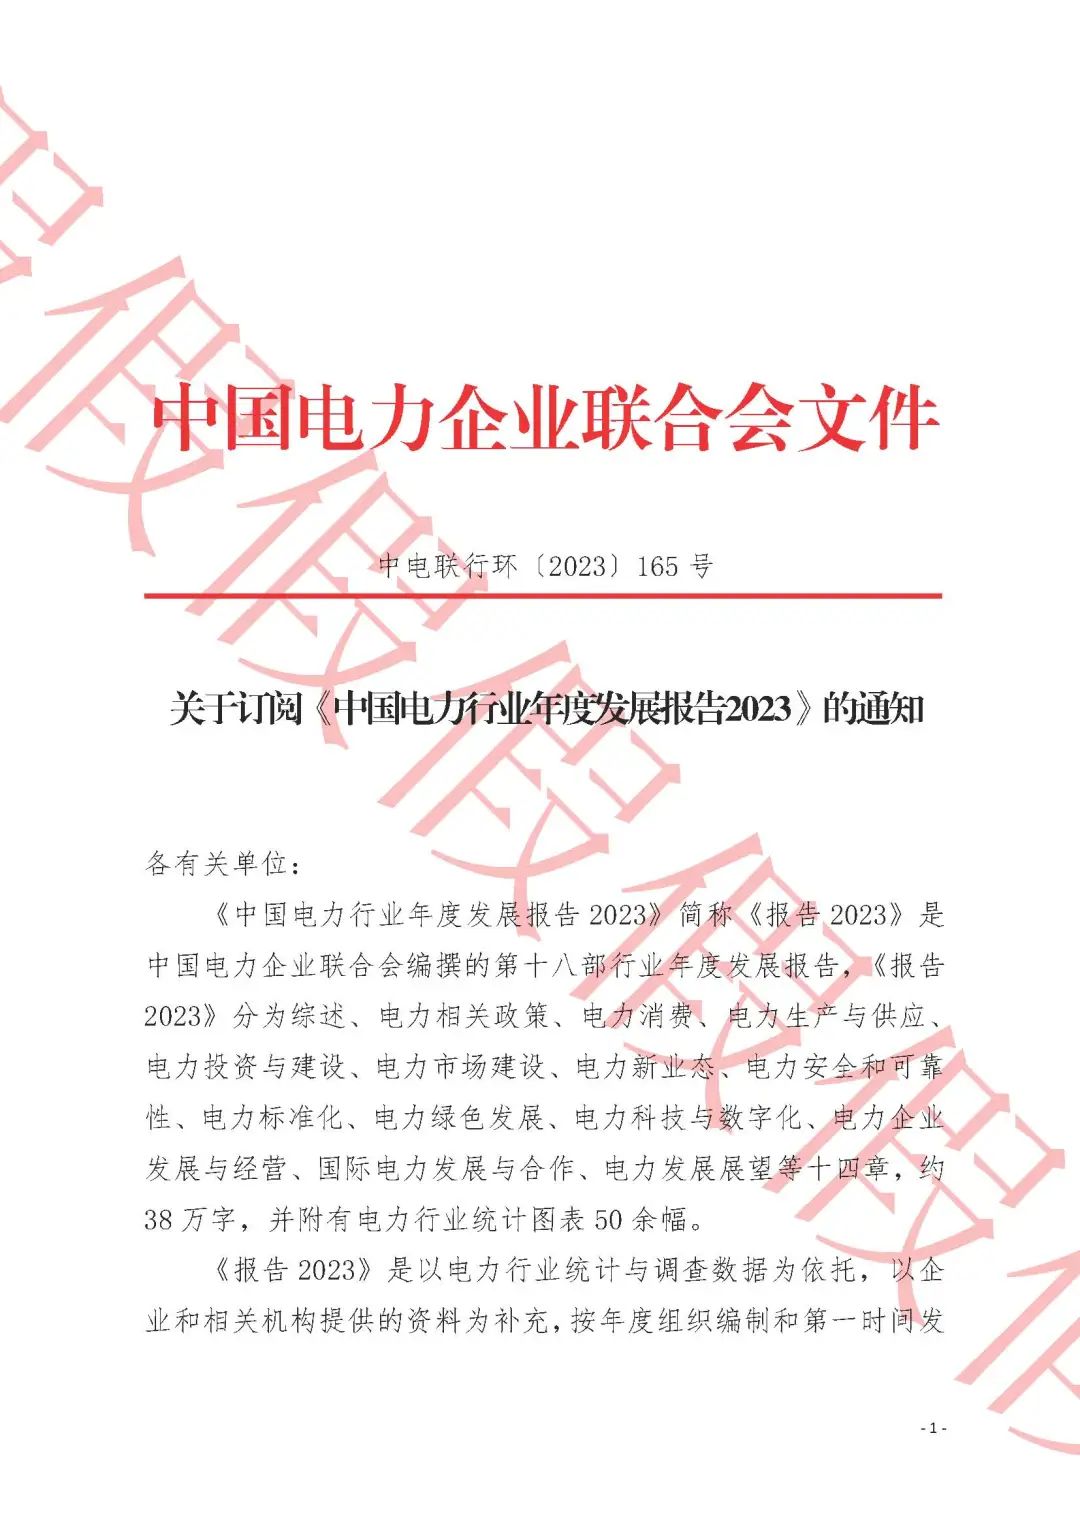 中电联：有不法分子冒名伪造公章发文征订《中国电力行业年度发展报告》